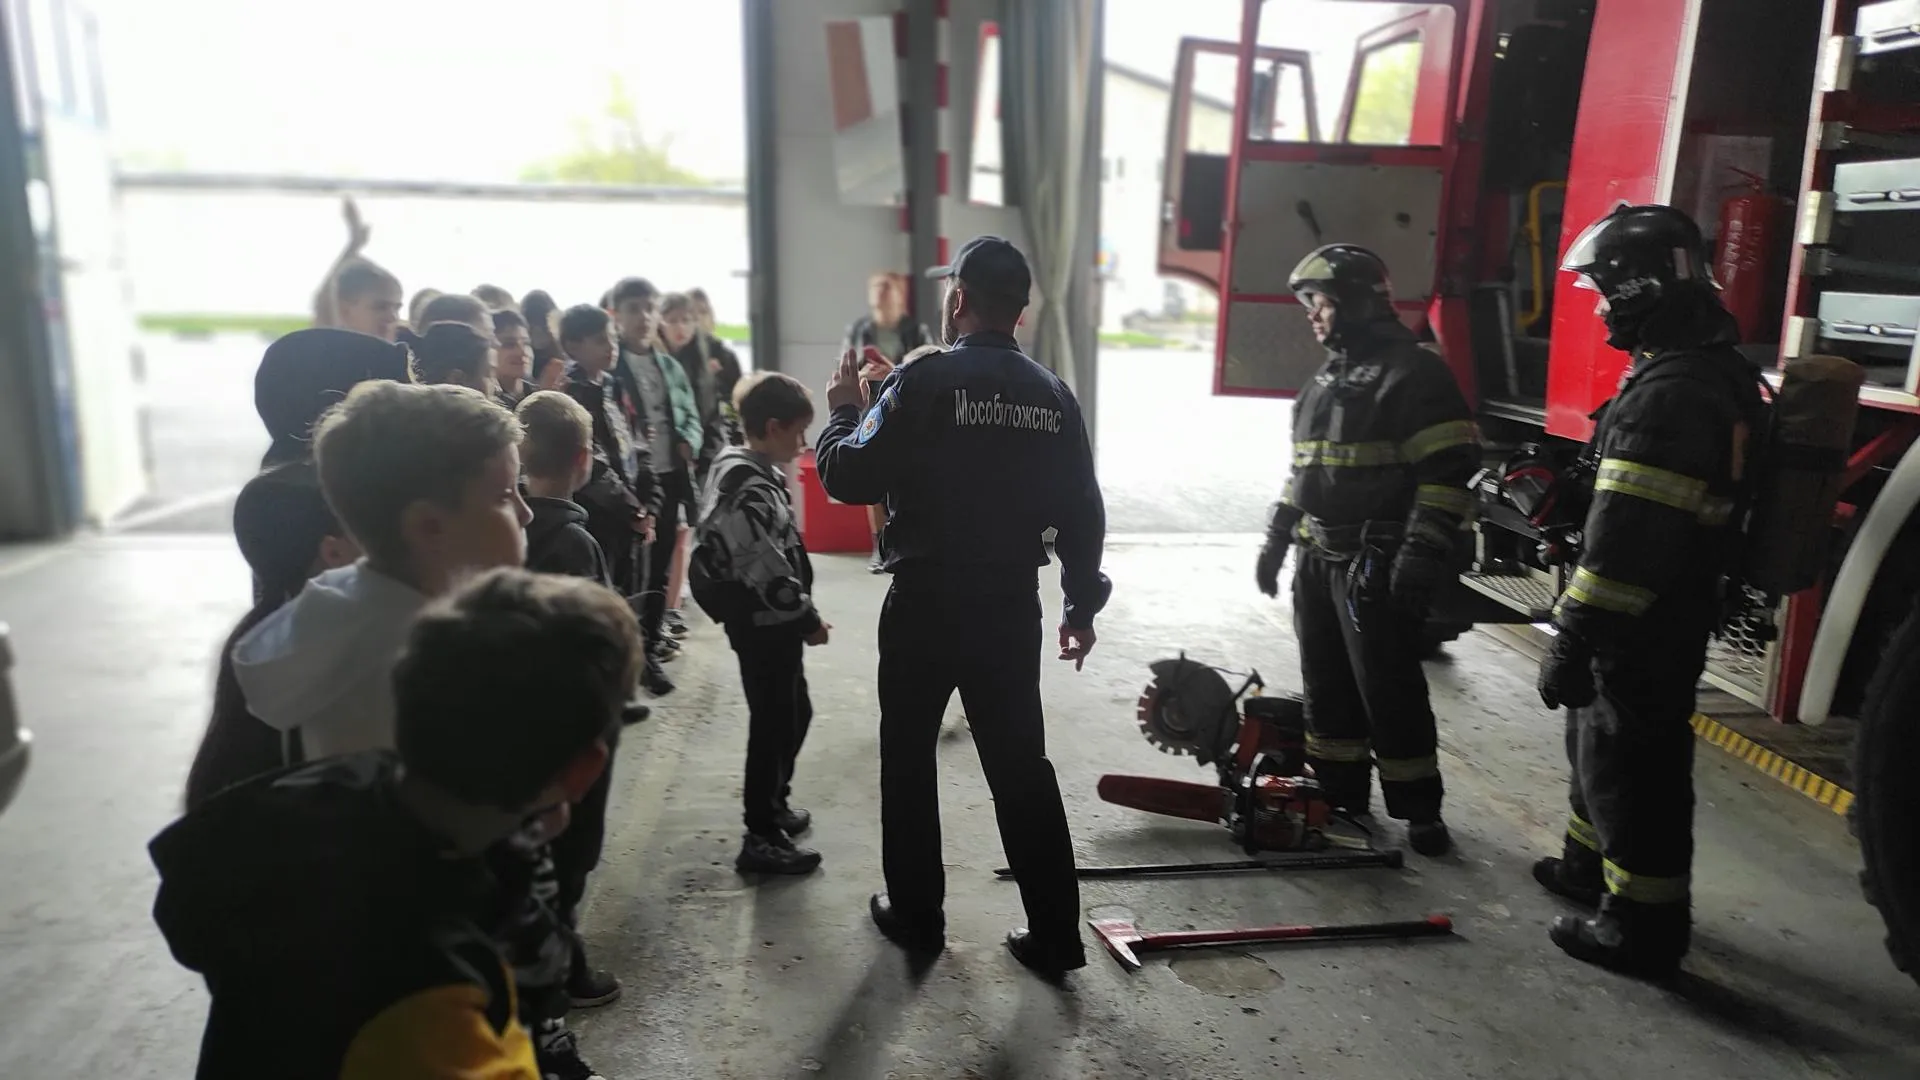 Подмосковные пожарные приняли участие в акции «День добрых дел»